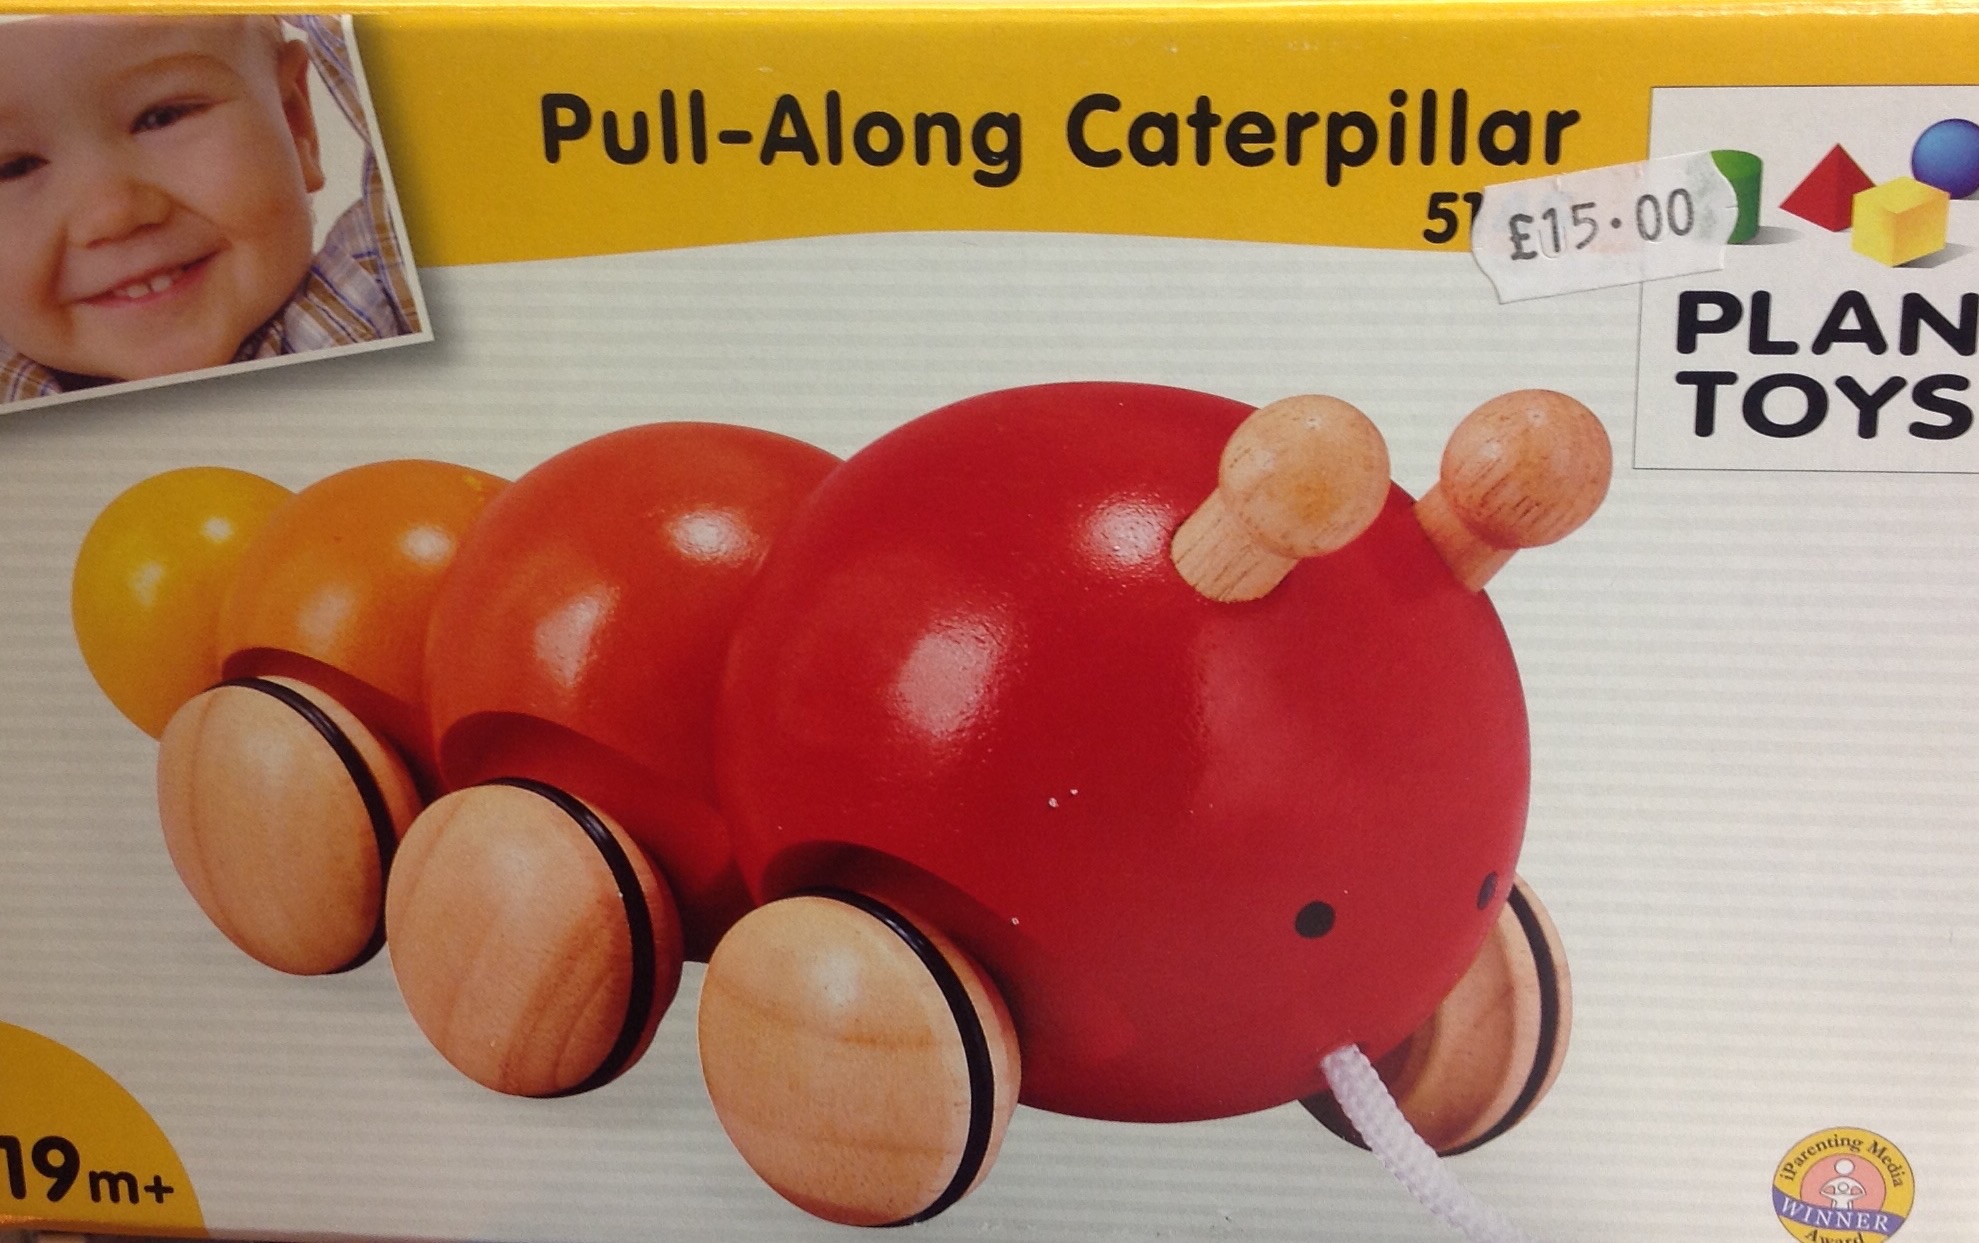 Plan Toys Caterpillar 106